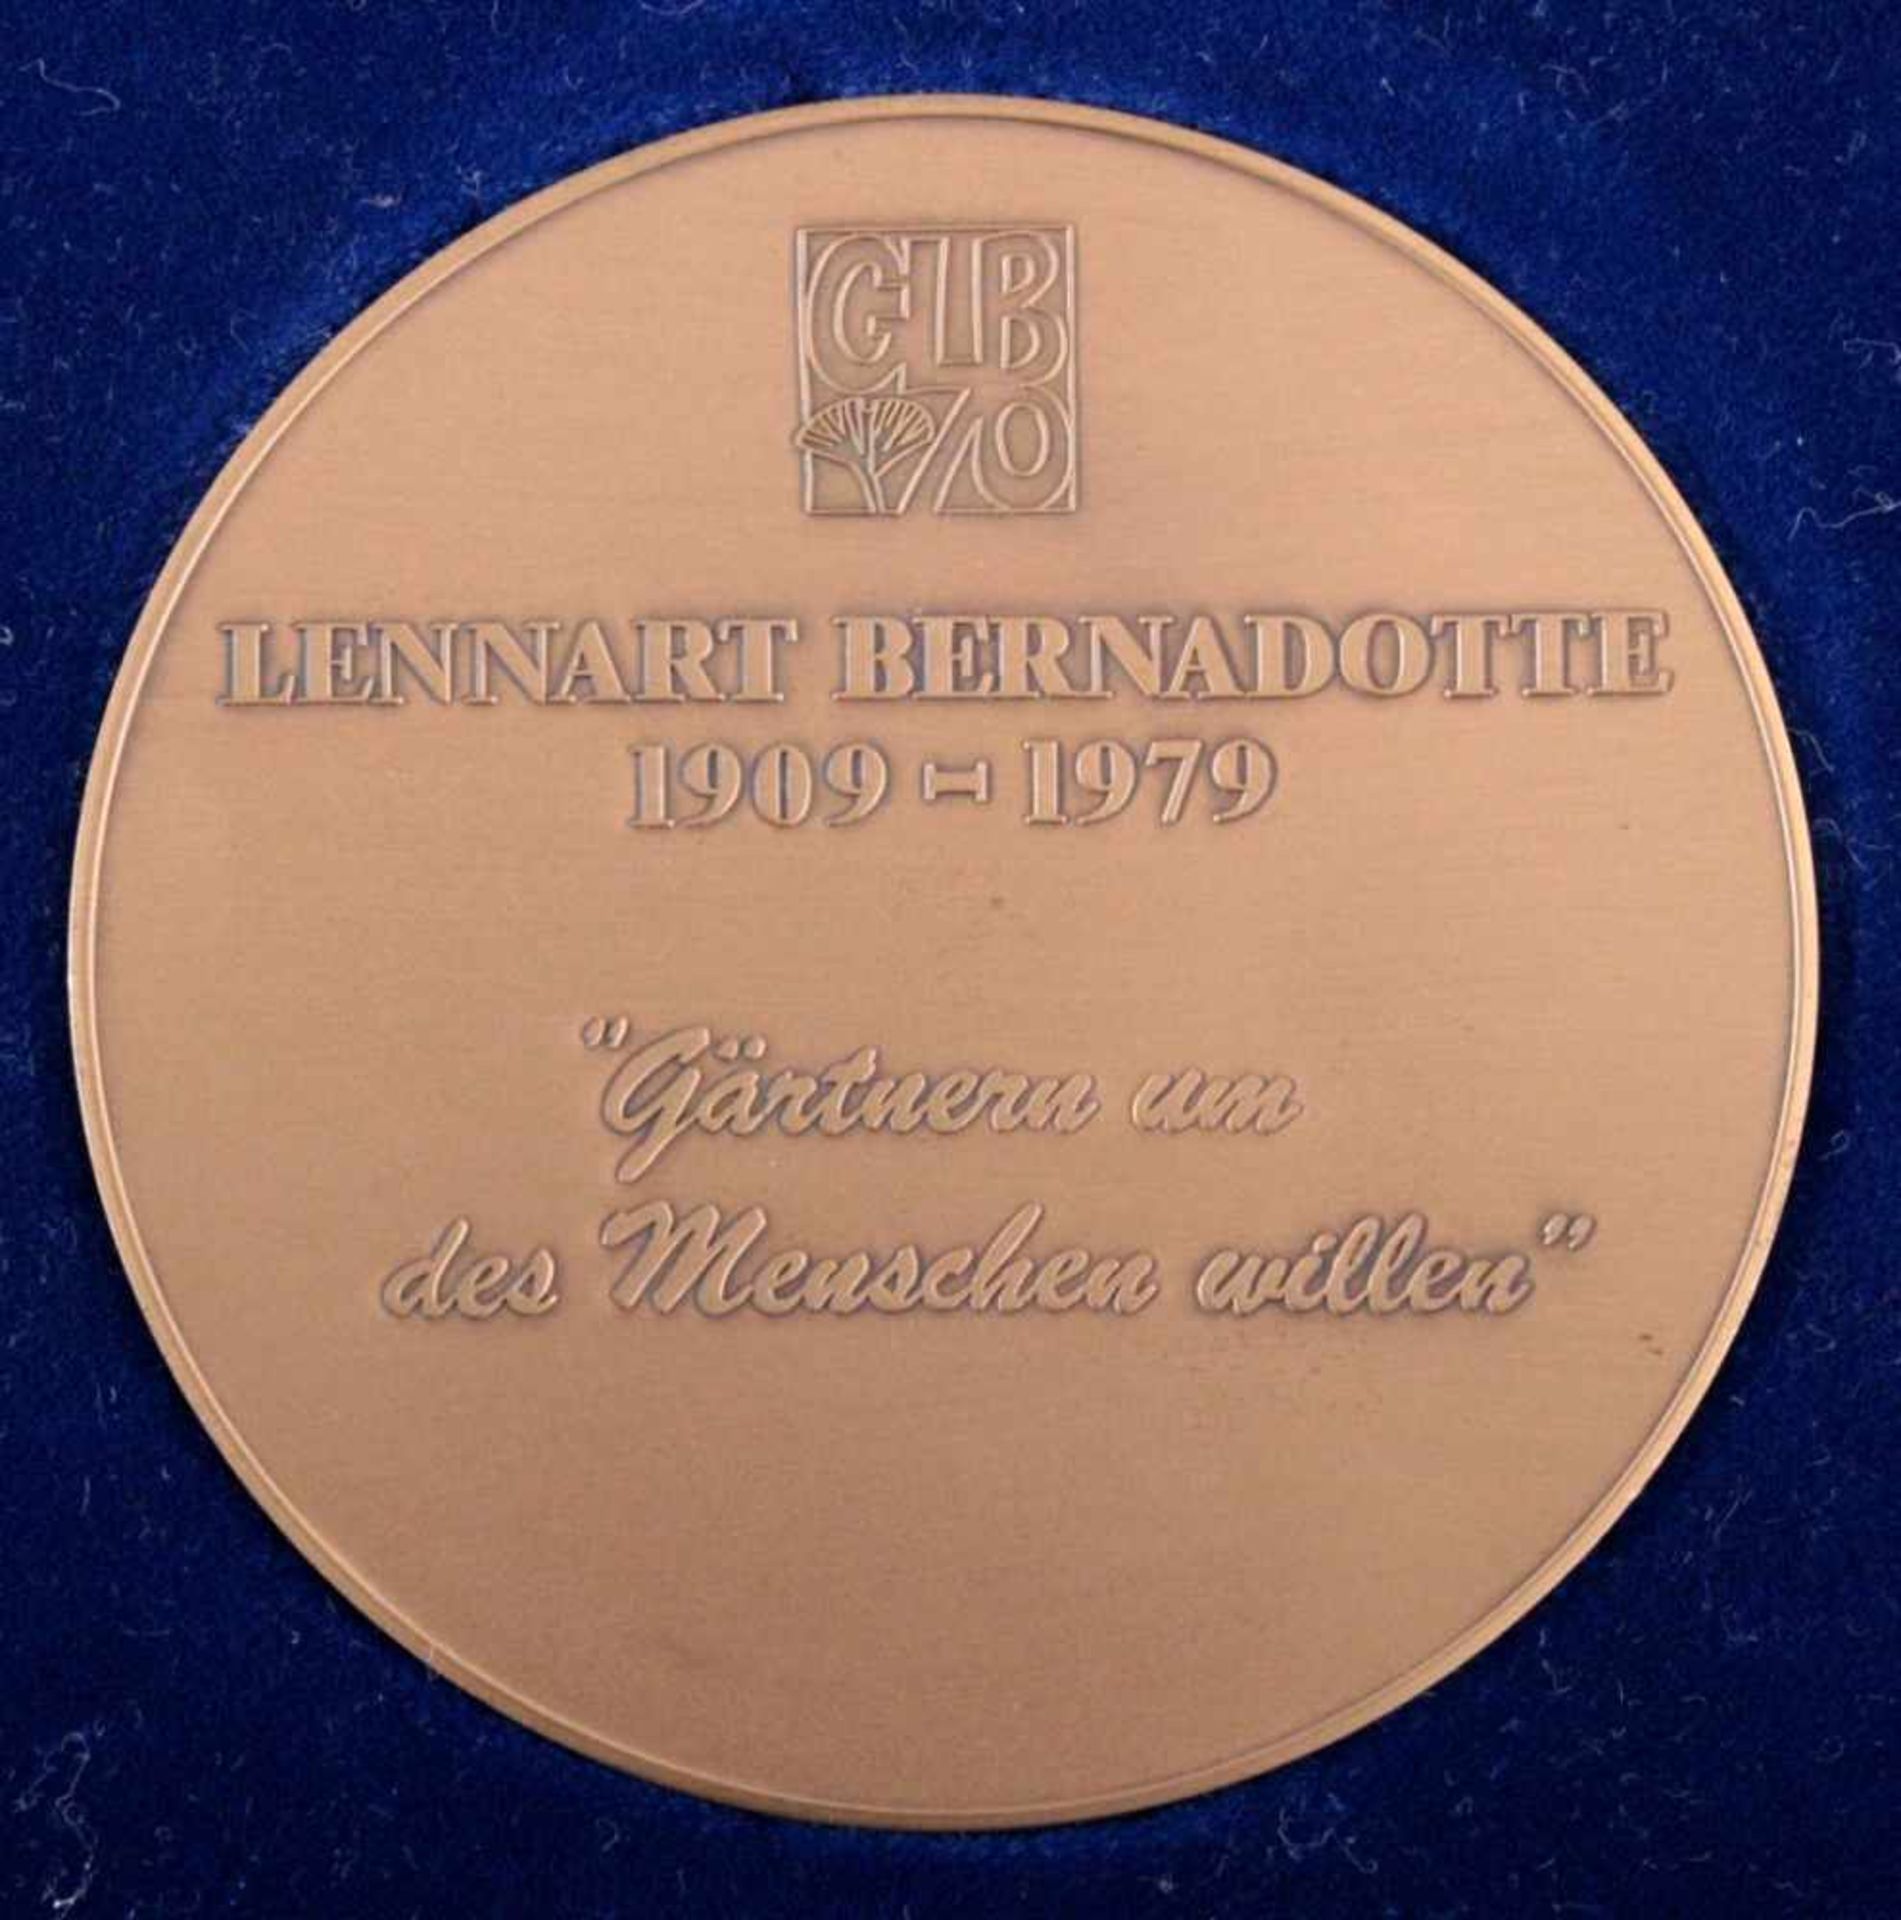 Medaille Lennart Bernadotte (1909-1979)Vorderseite: Porträt nach links und monogrammiert "MK", - Bild 2 aus 3